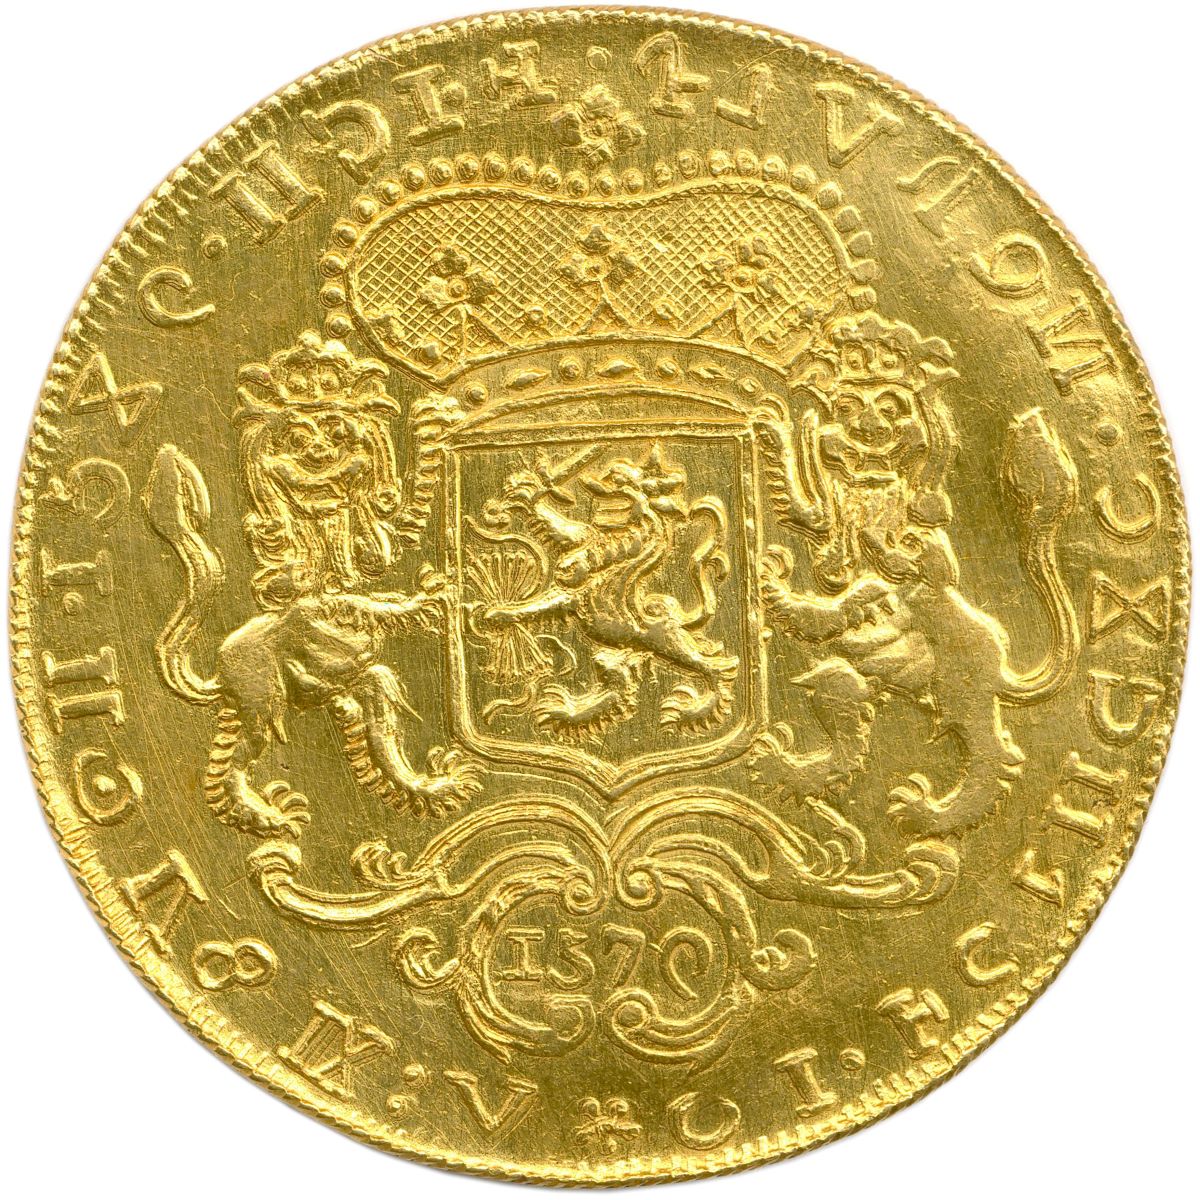 🪙 Les plus belles envolées reviennent au lot 85, une pièce d'hommage de dix louis d’or pour le roi Louis XIII adjugée à 156 000 €, et au lot 156, un étonnant double-ducaton en or du type de la Compagnie des Indes néerlandaises, cédé pour 41 600 €.